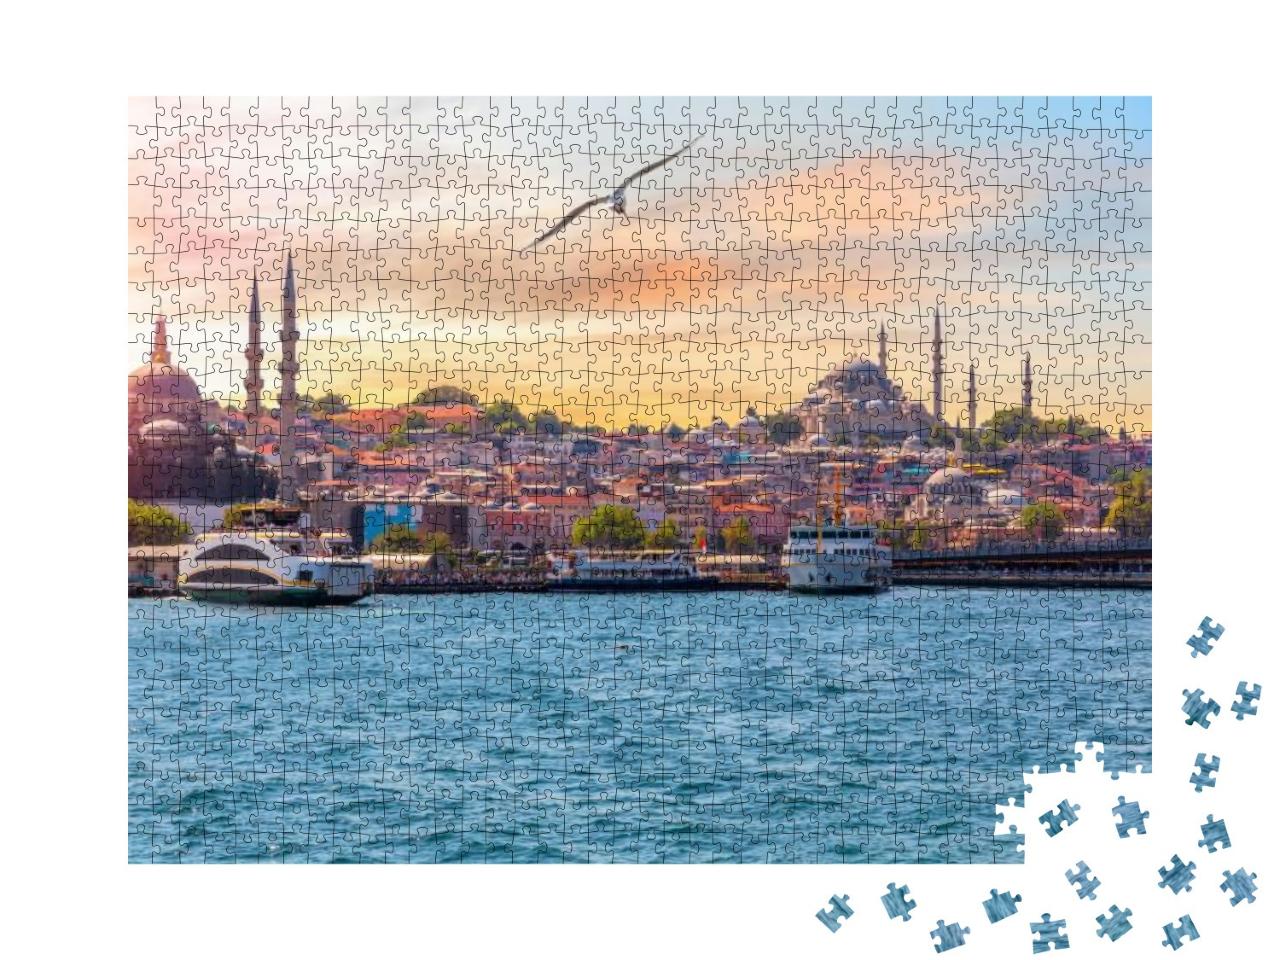 Puzzle 1000 Teile „Suleymaniye-Moschee und Rustem-Pascha-Moschee, Istanbul, Türkei“